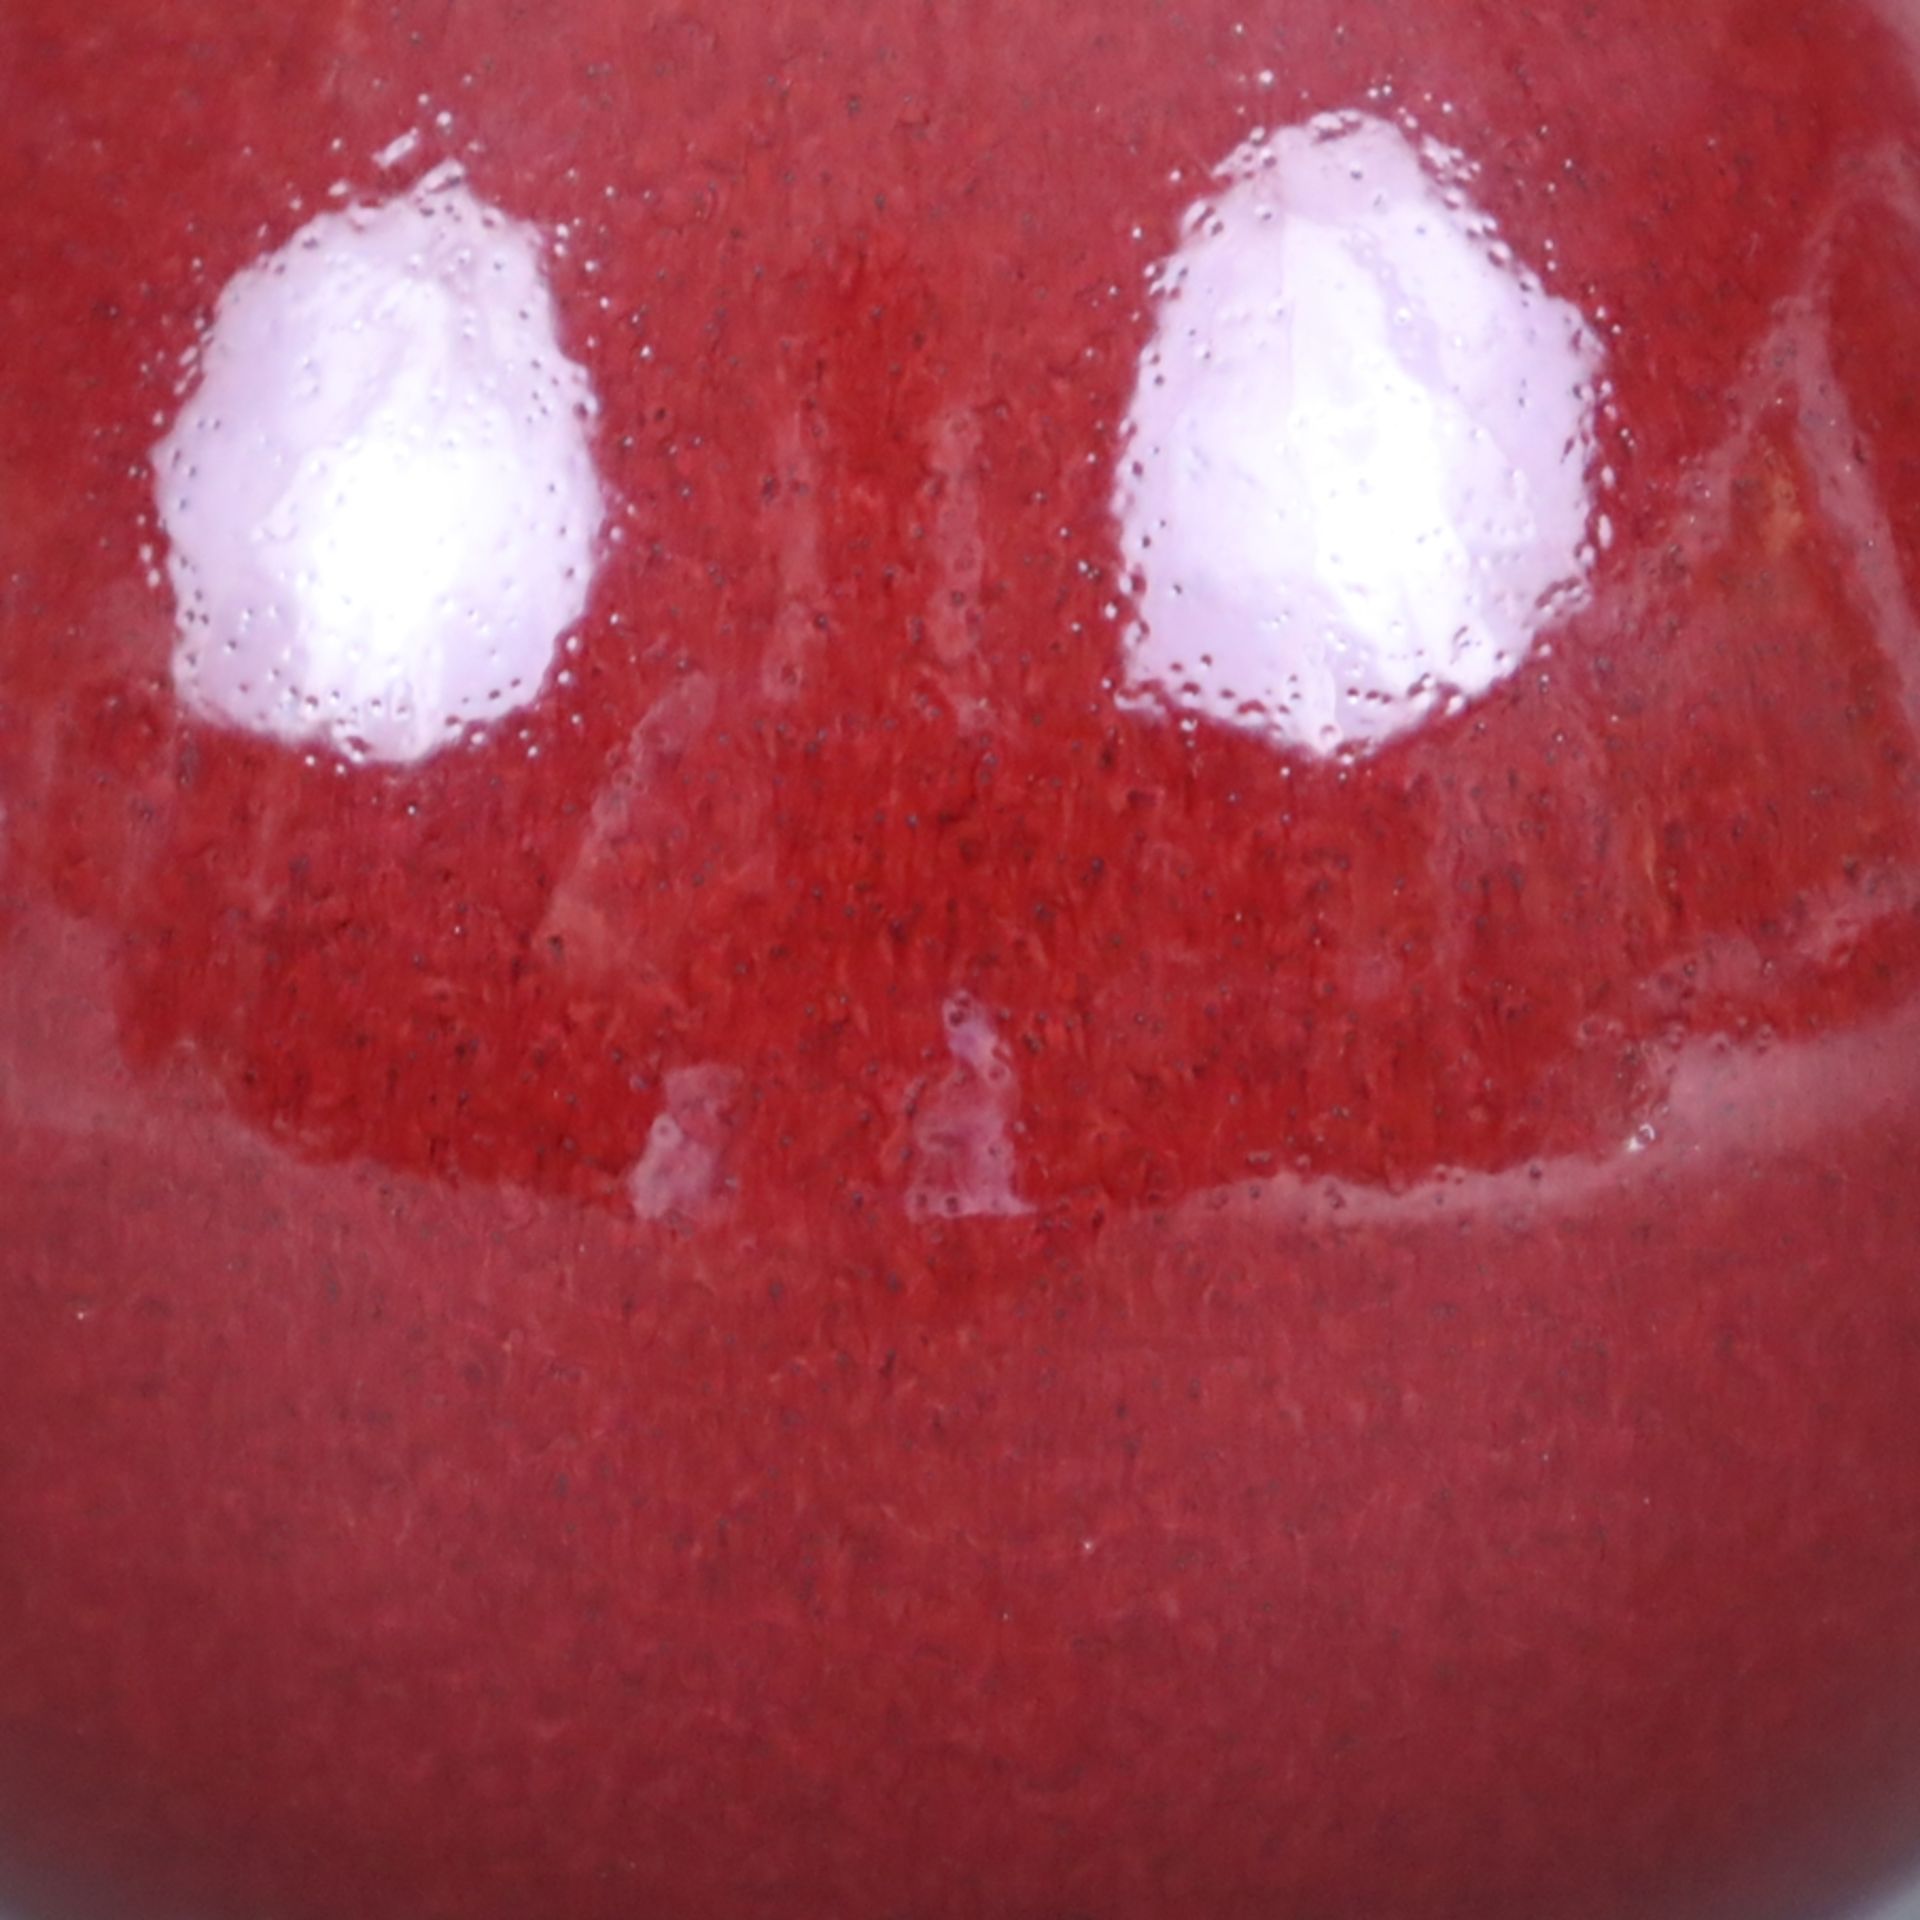 Flaschenvase - vom Typus Yuhuchunping, monochrome Ochsenblut-Überlaufglasur, im Bereich des Lippenr - Image 4 of 6